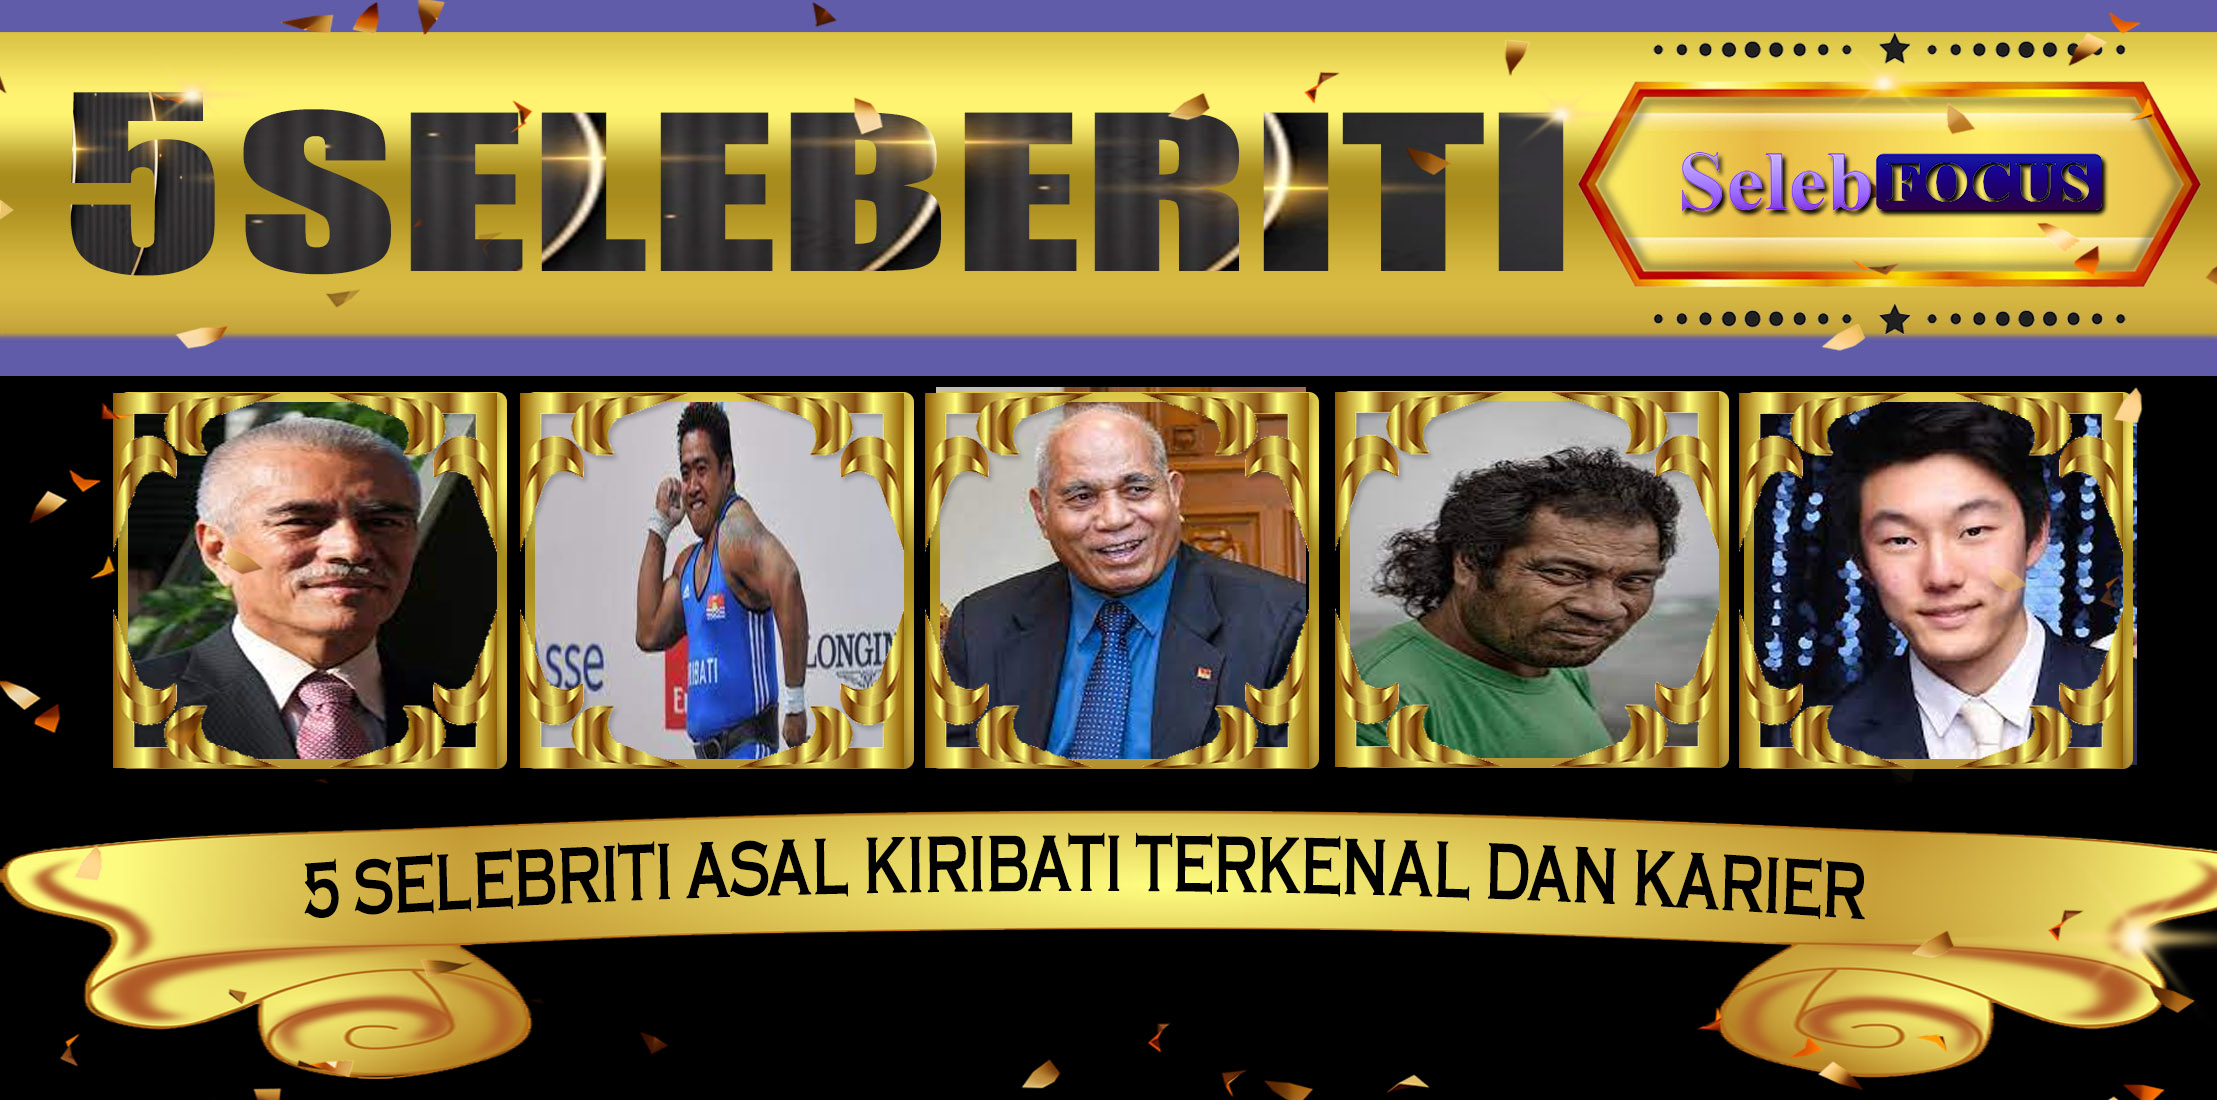 5 Selebriti Pria Kiribati Terkenal Dan Karier Gemilang